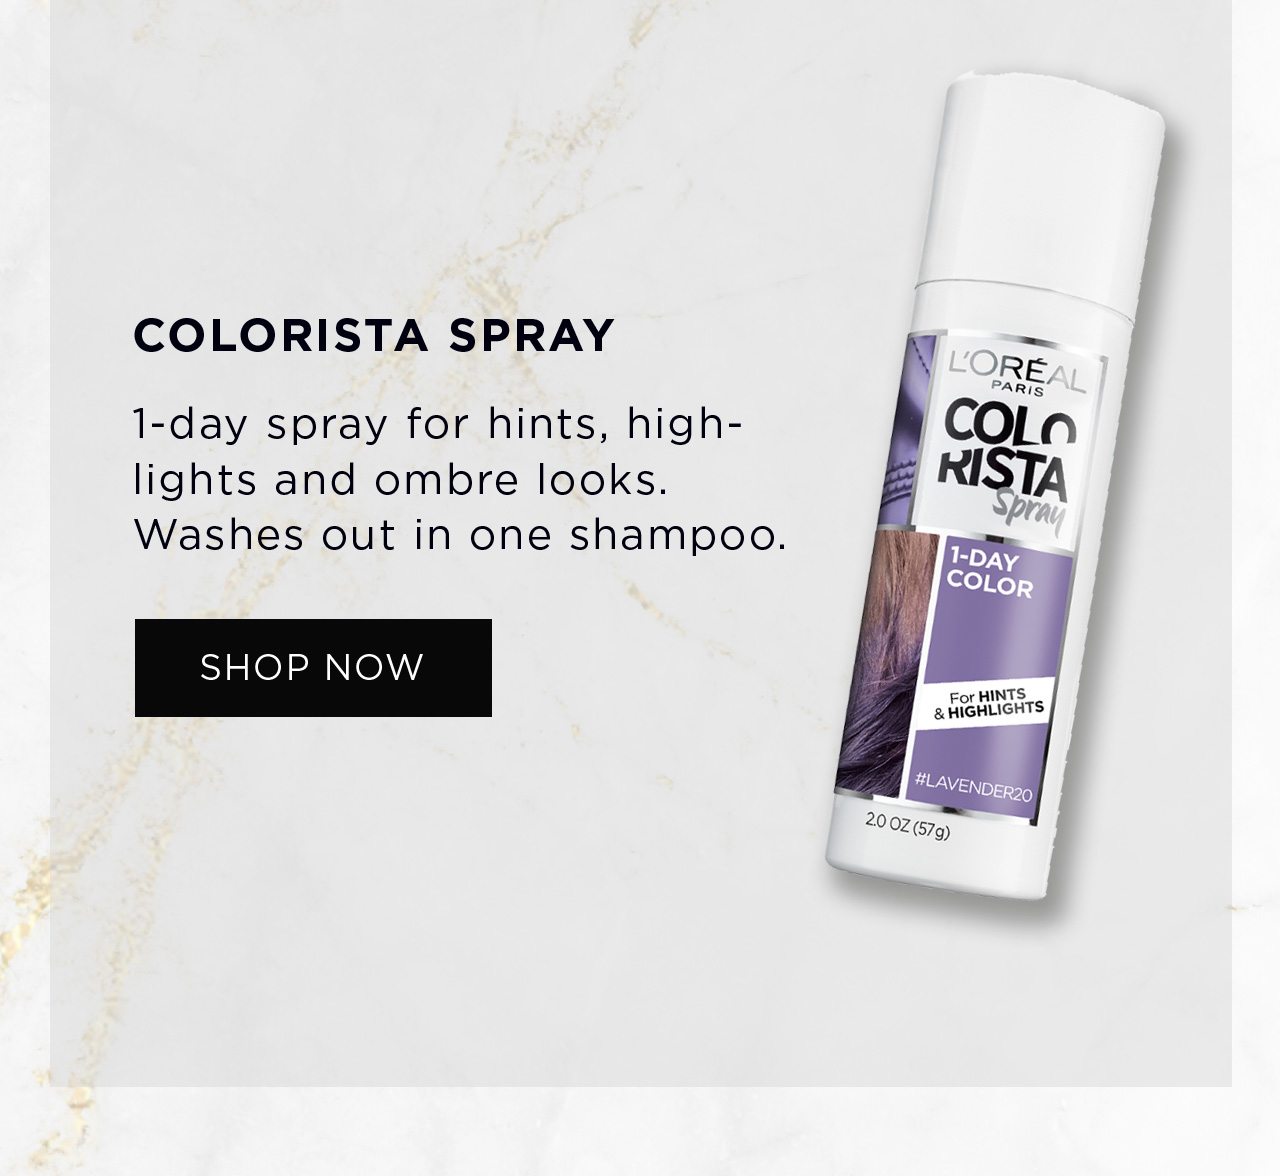 Colorista spray - Shop Now